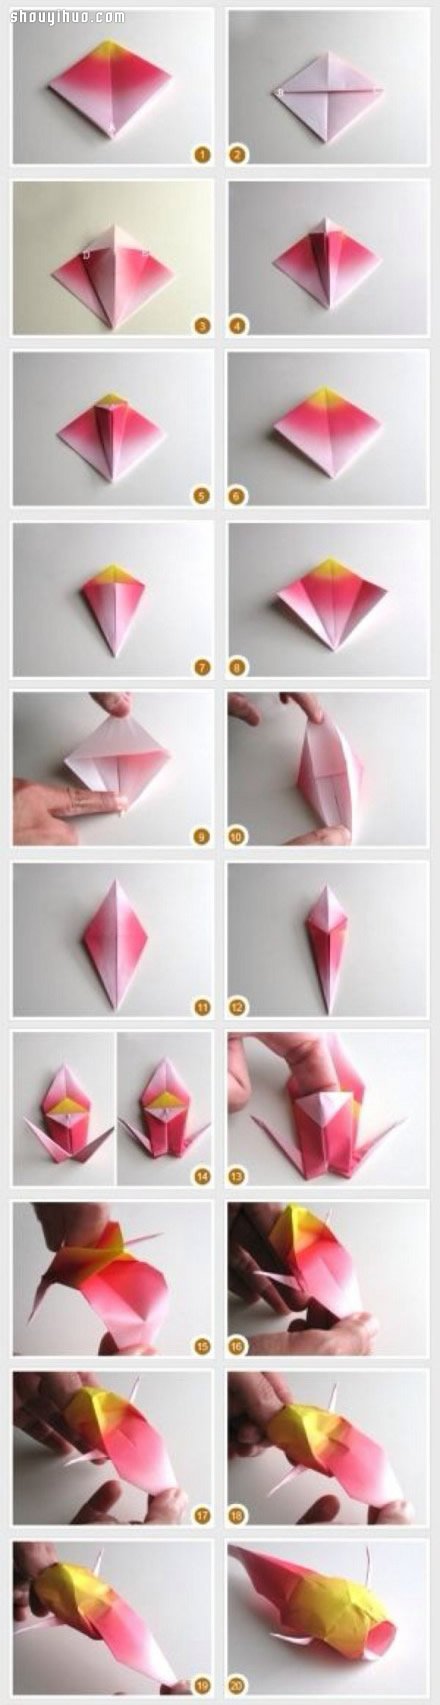 折纸逼真立体金鱼 金鱼的折法图解教程